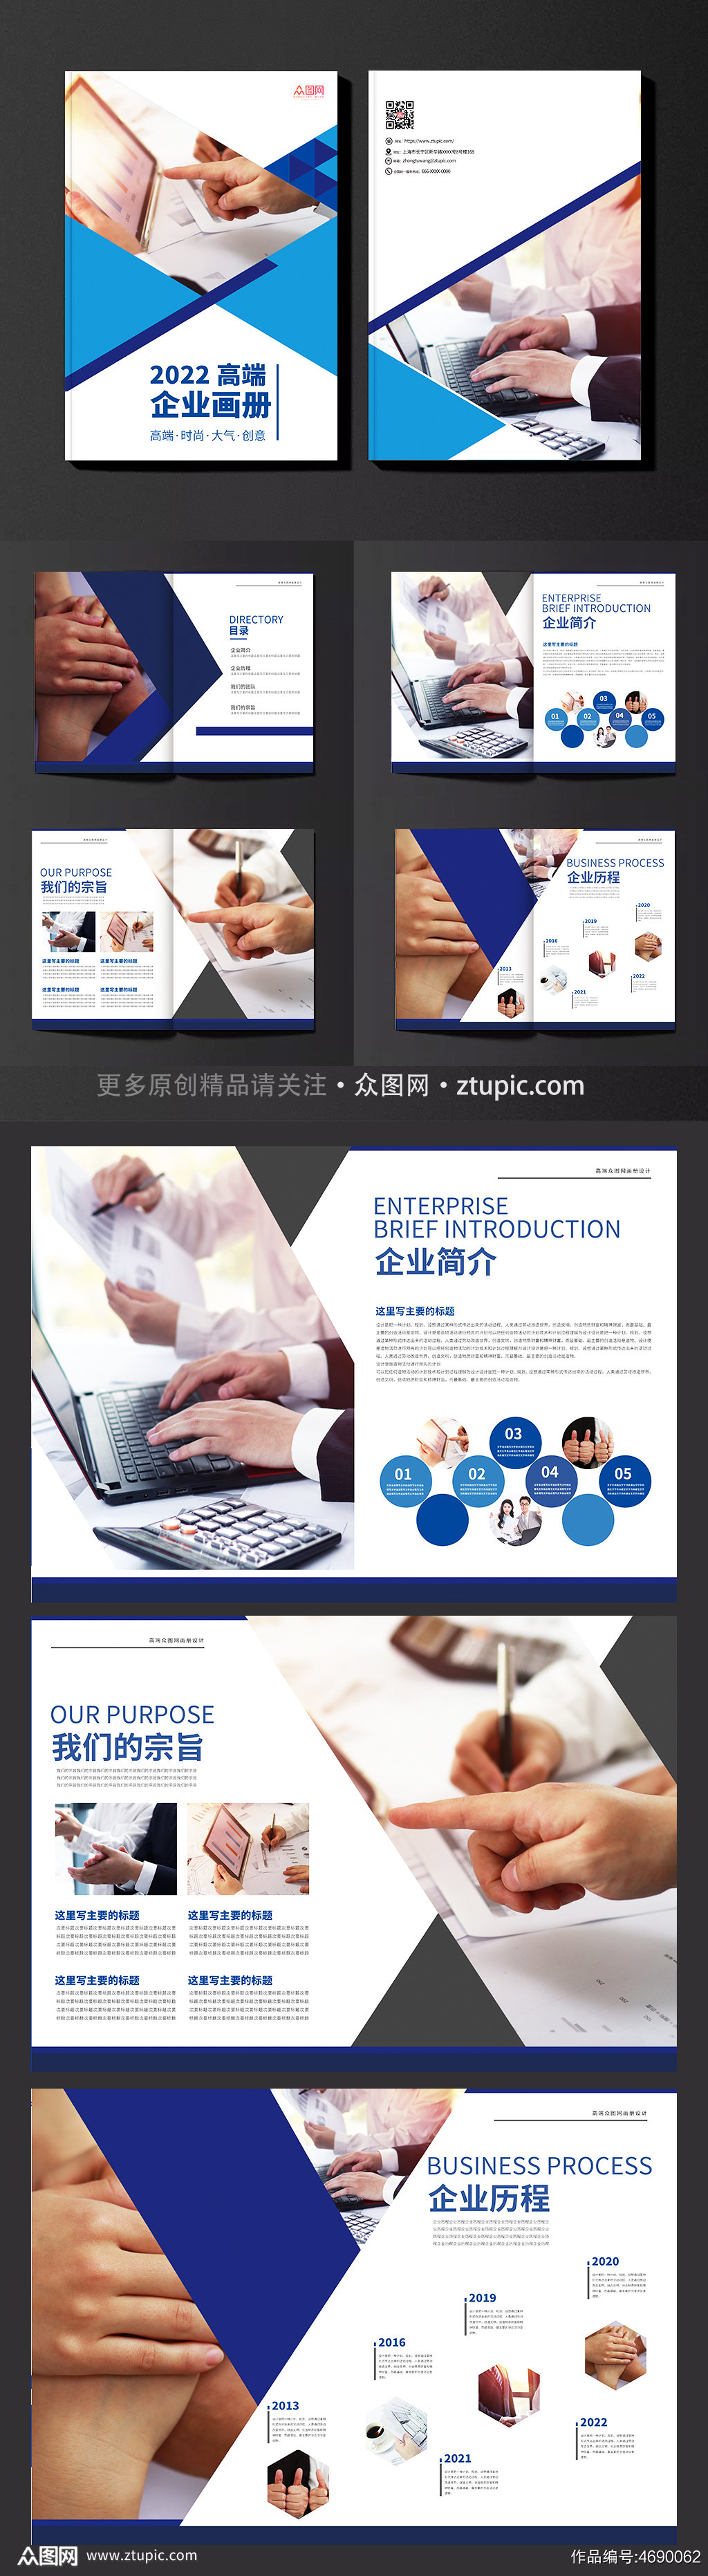 蓝色科技企业宣传画册模板素材